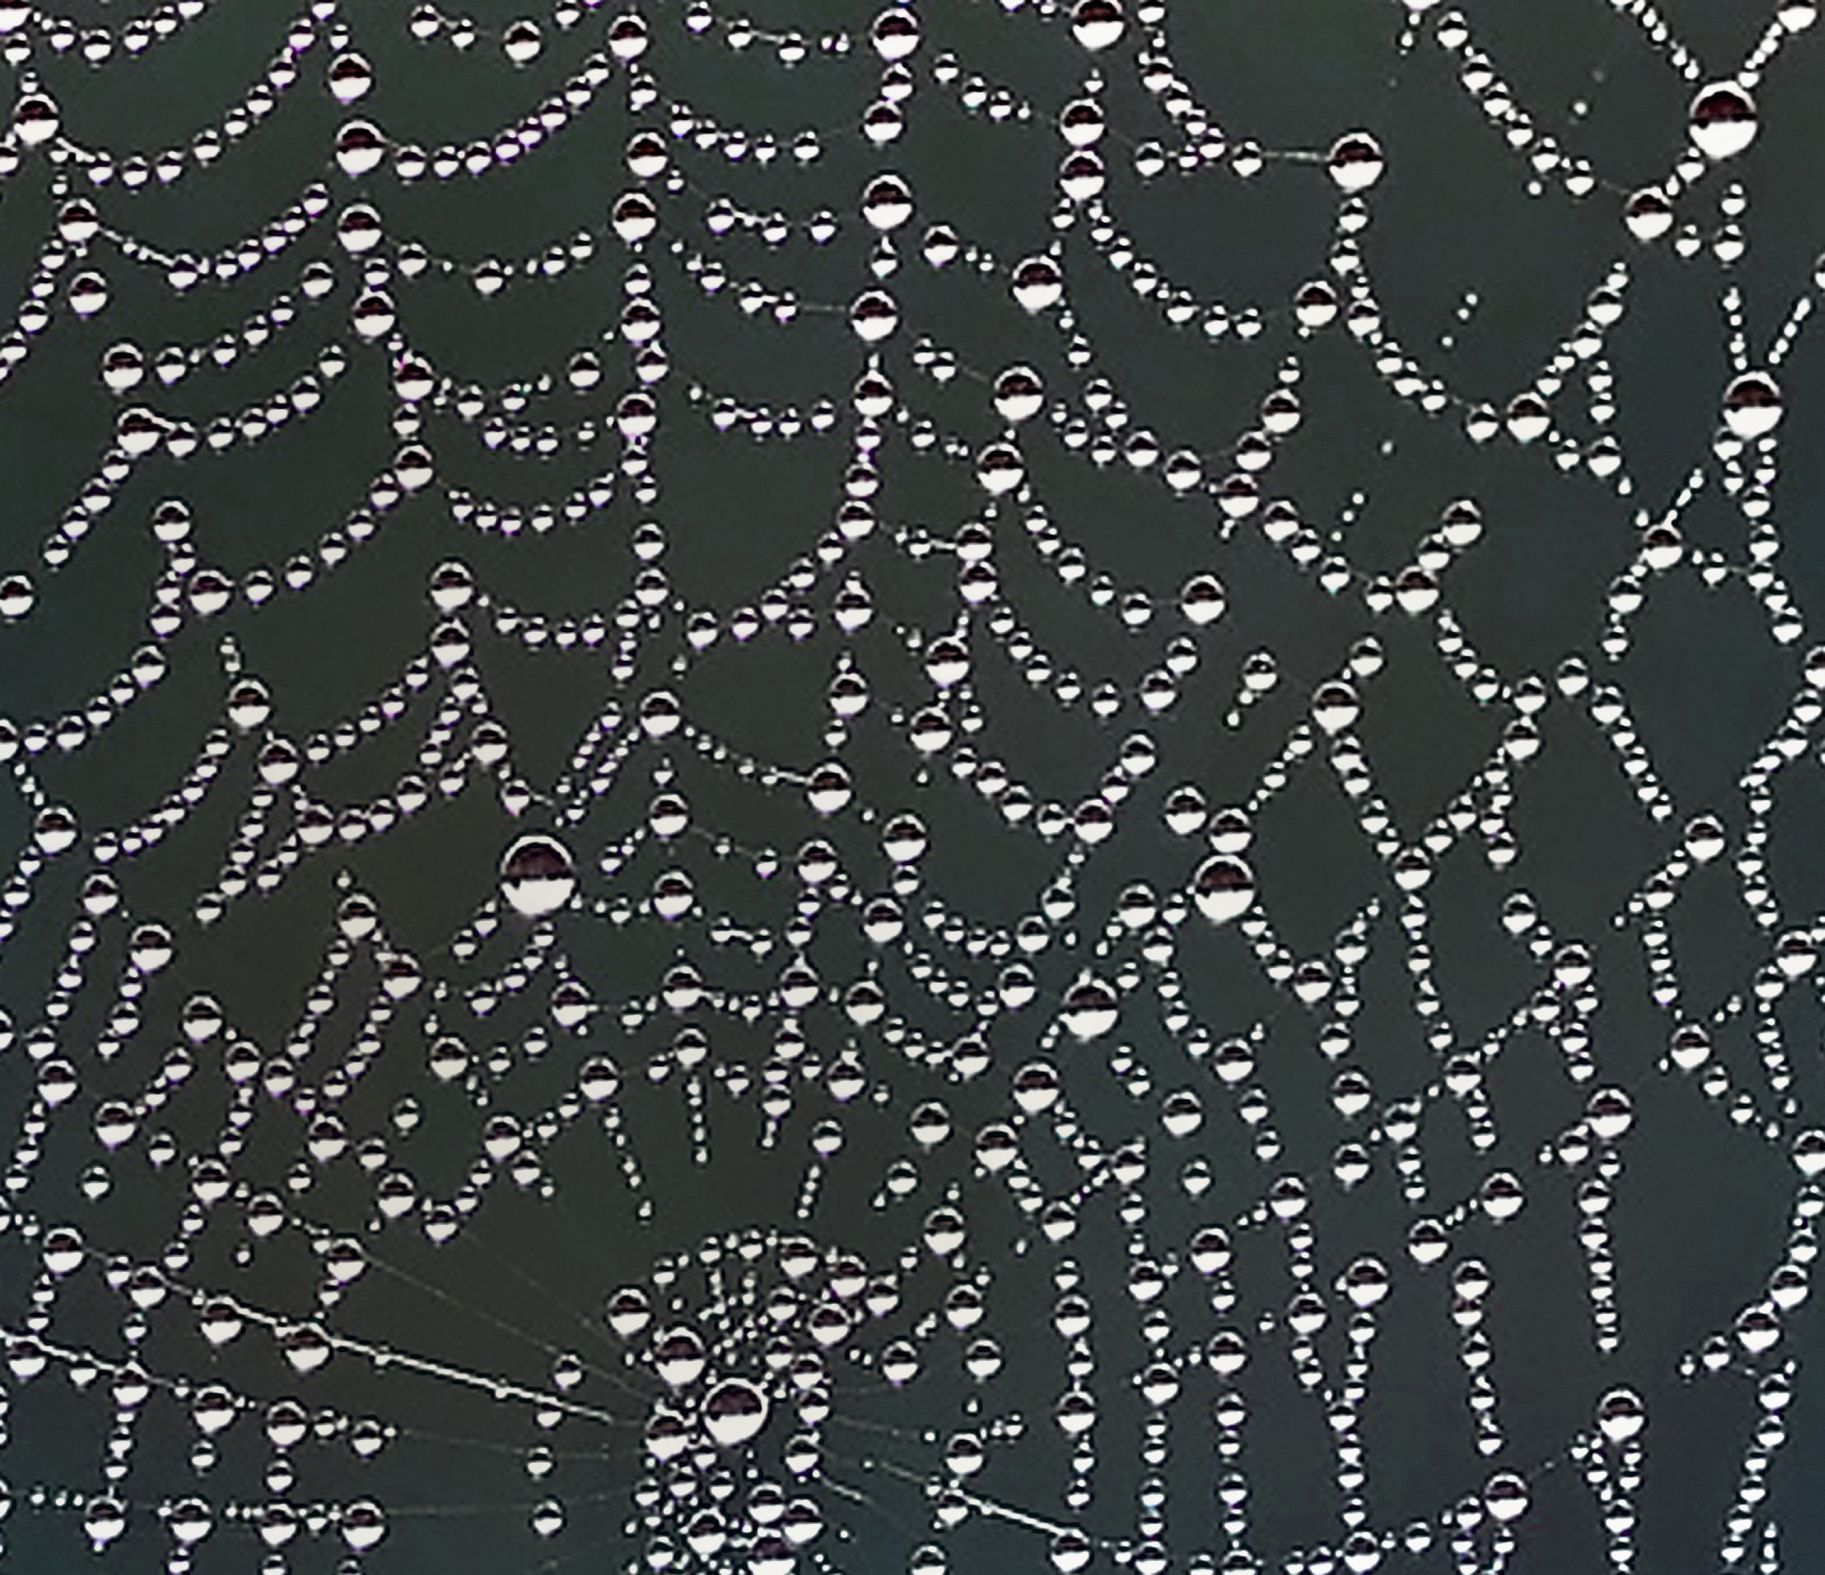 Spider Web Bubbles of Perceptionn